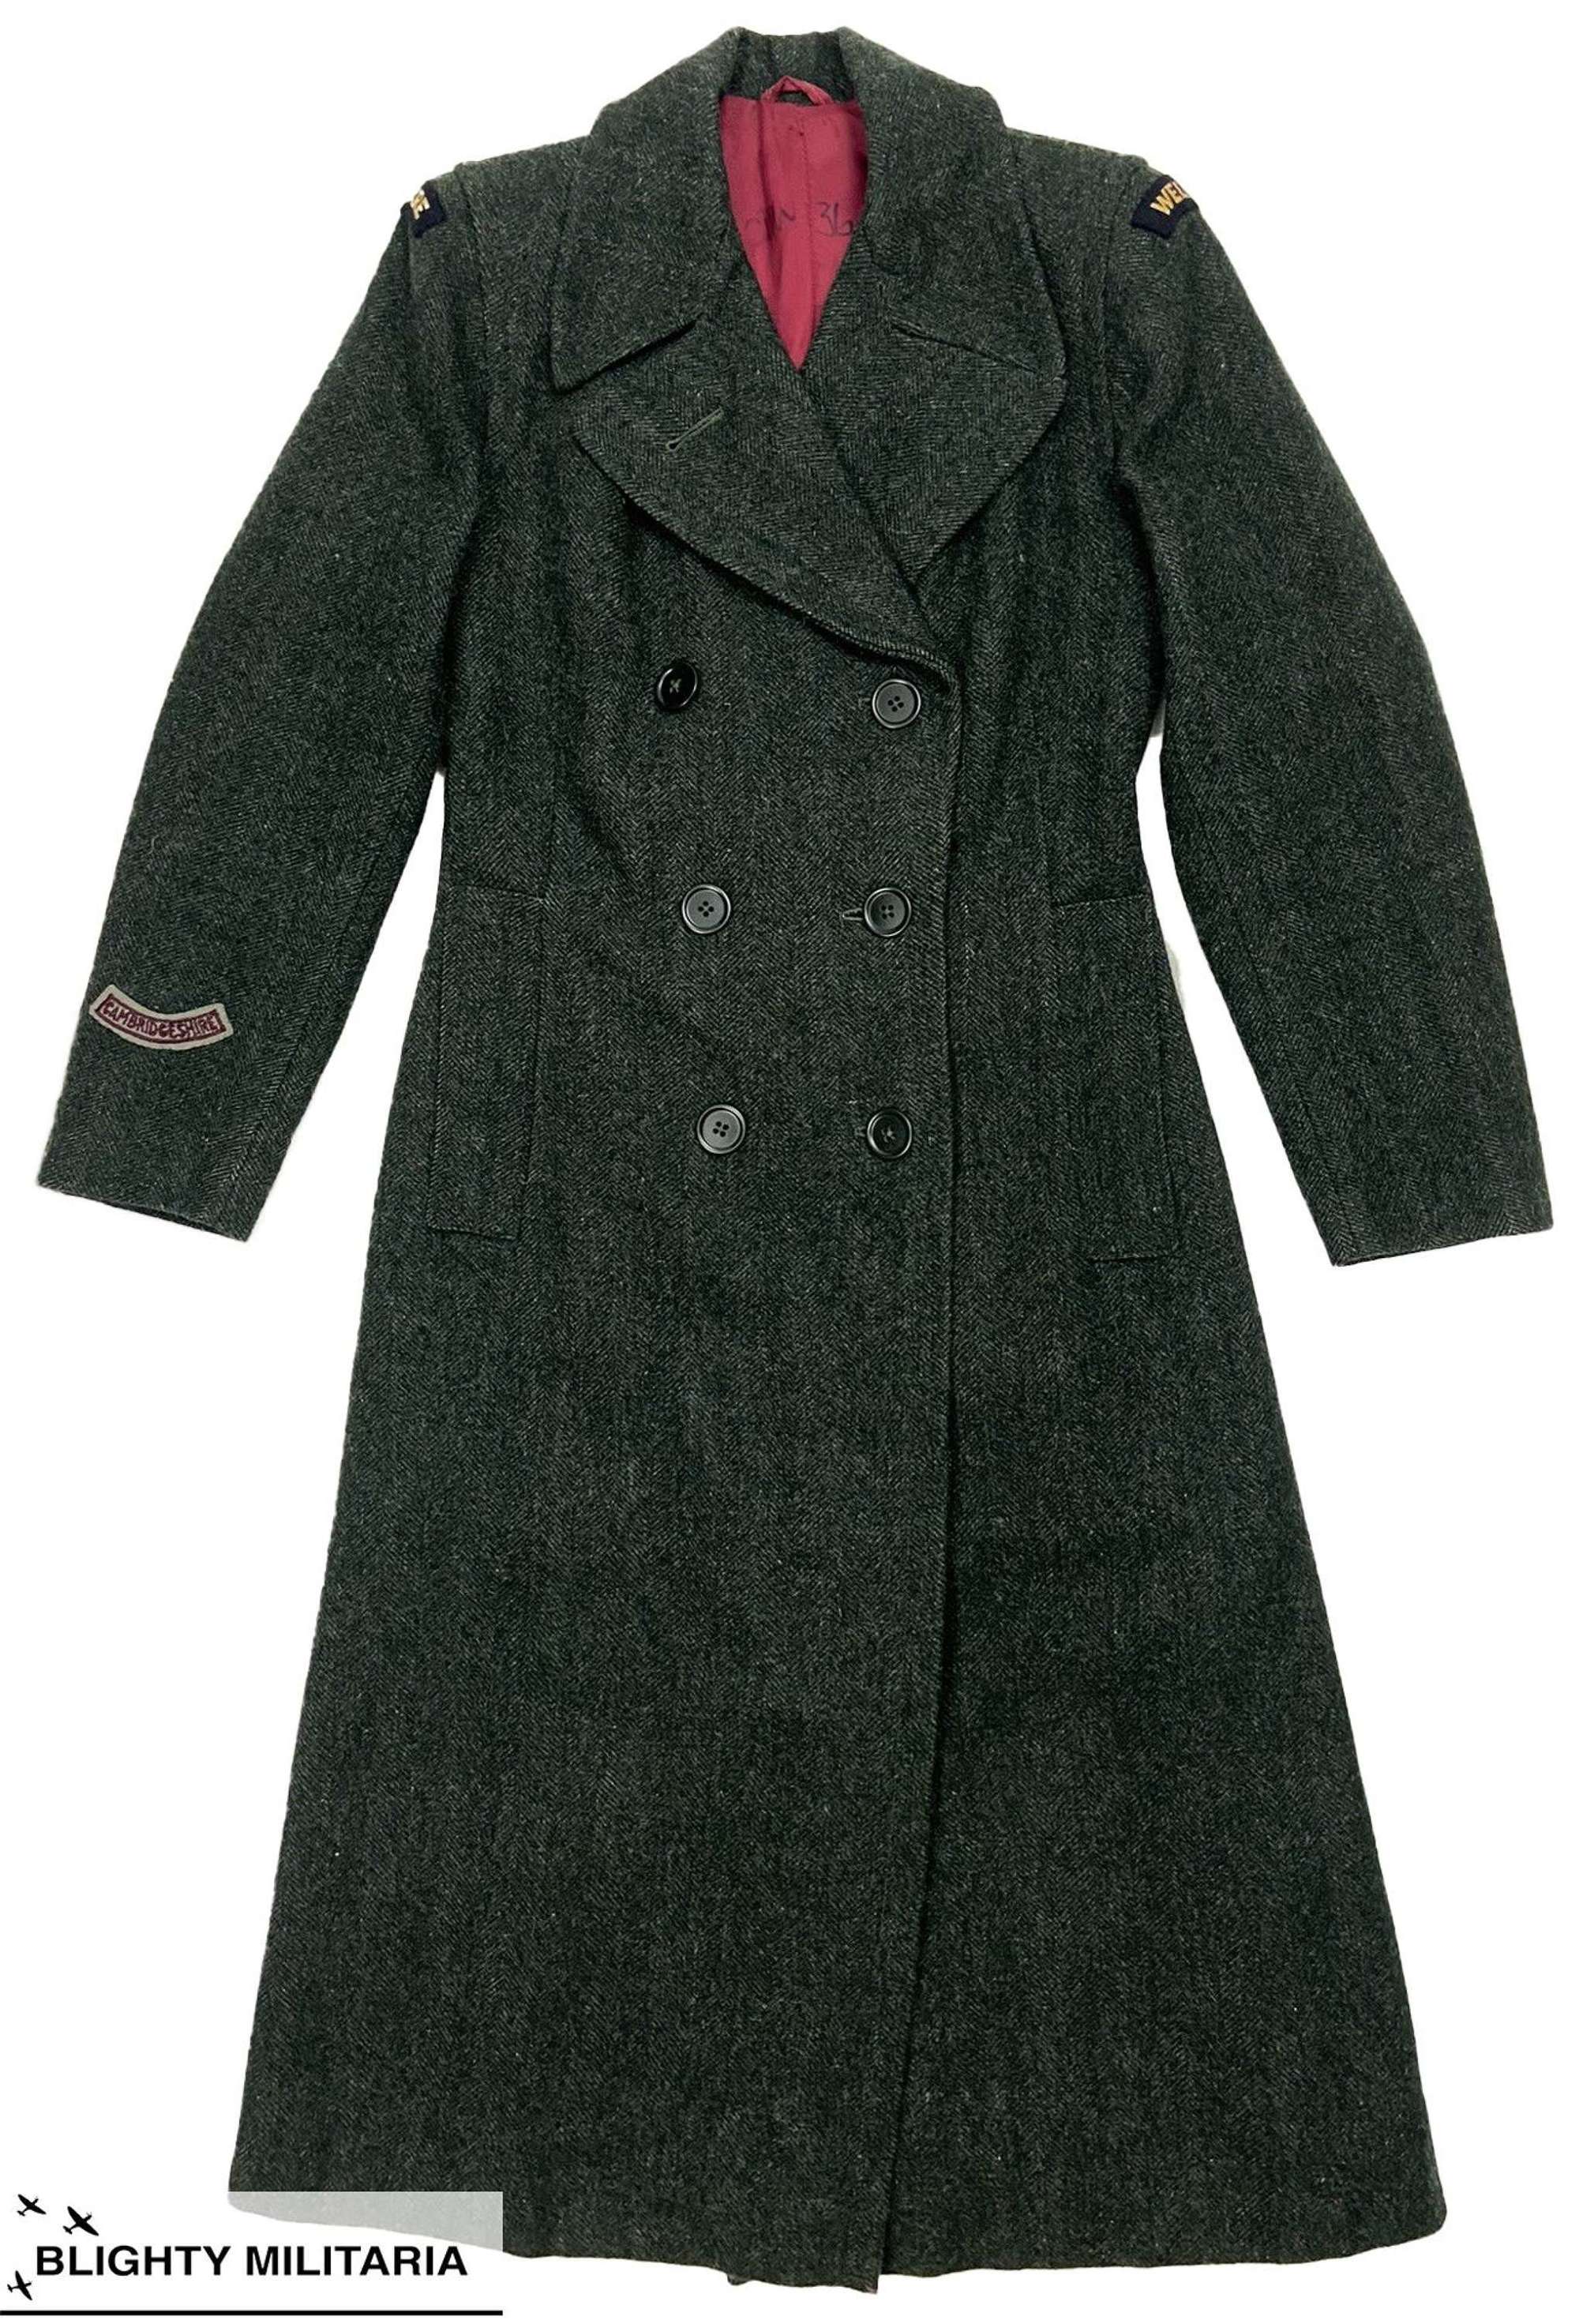 Original Post WW2 WVS Ladies Herringbone Tweed Overcoat